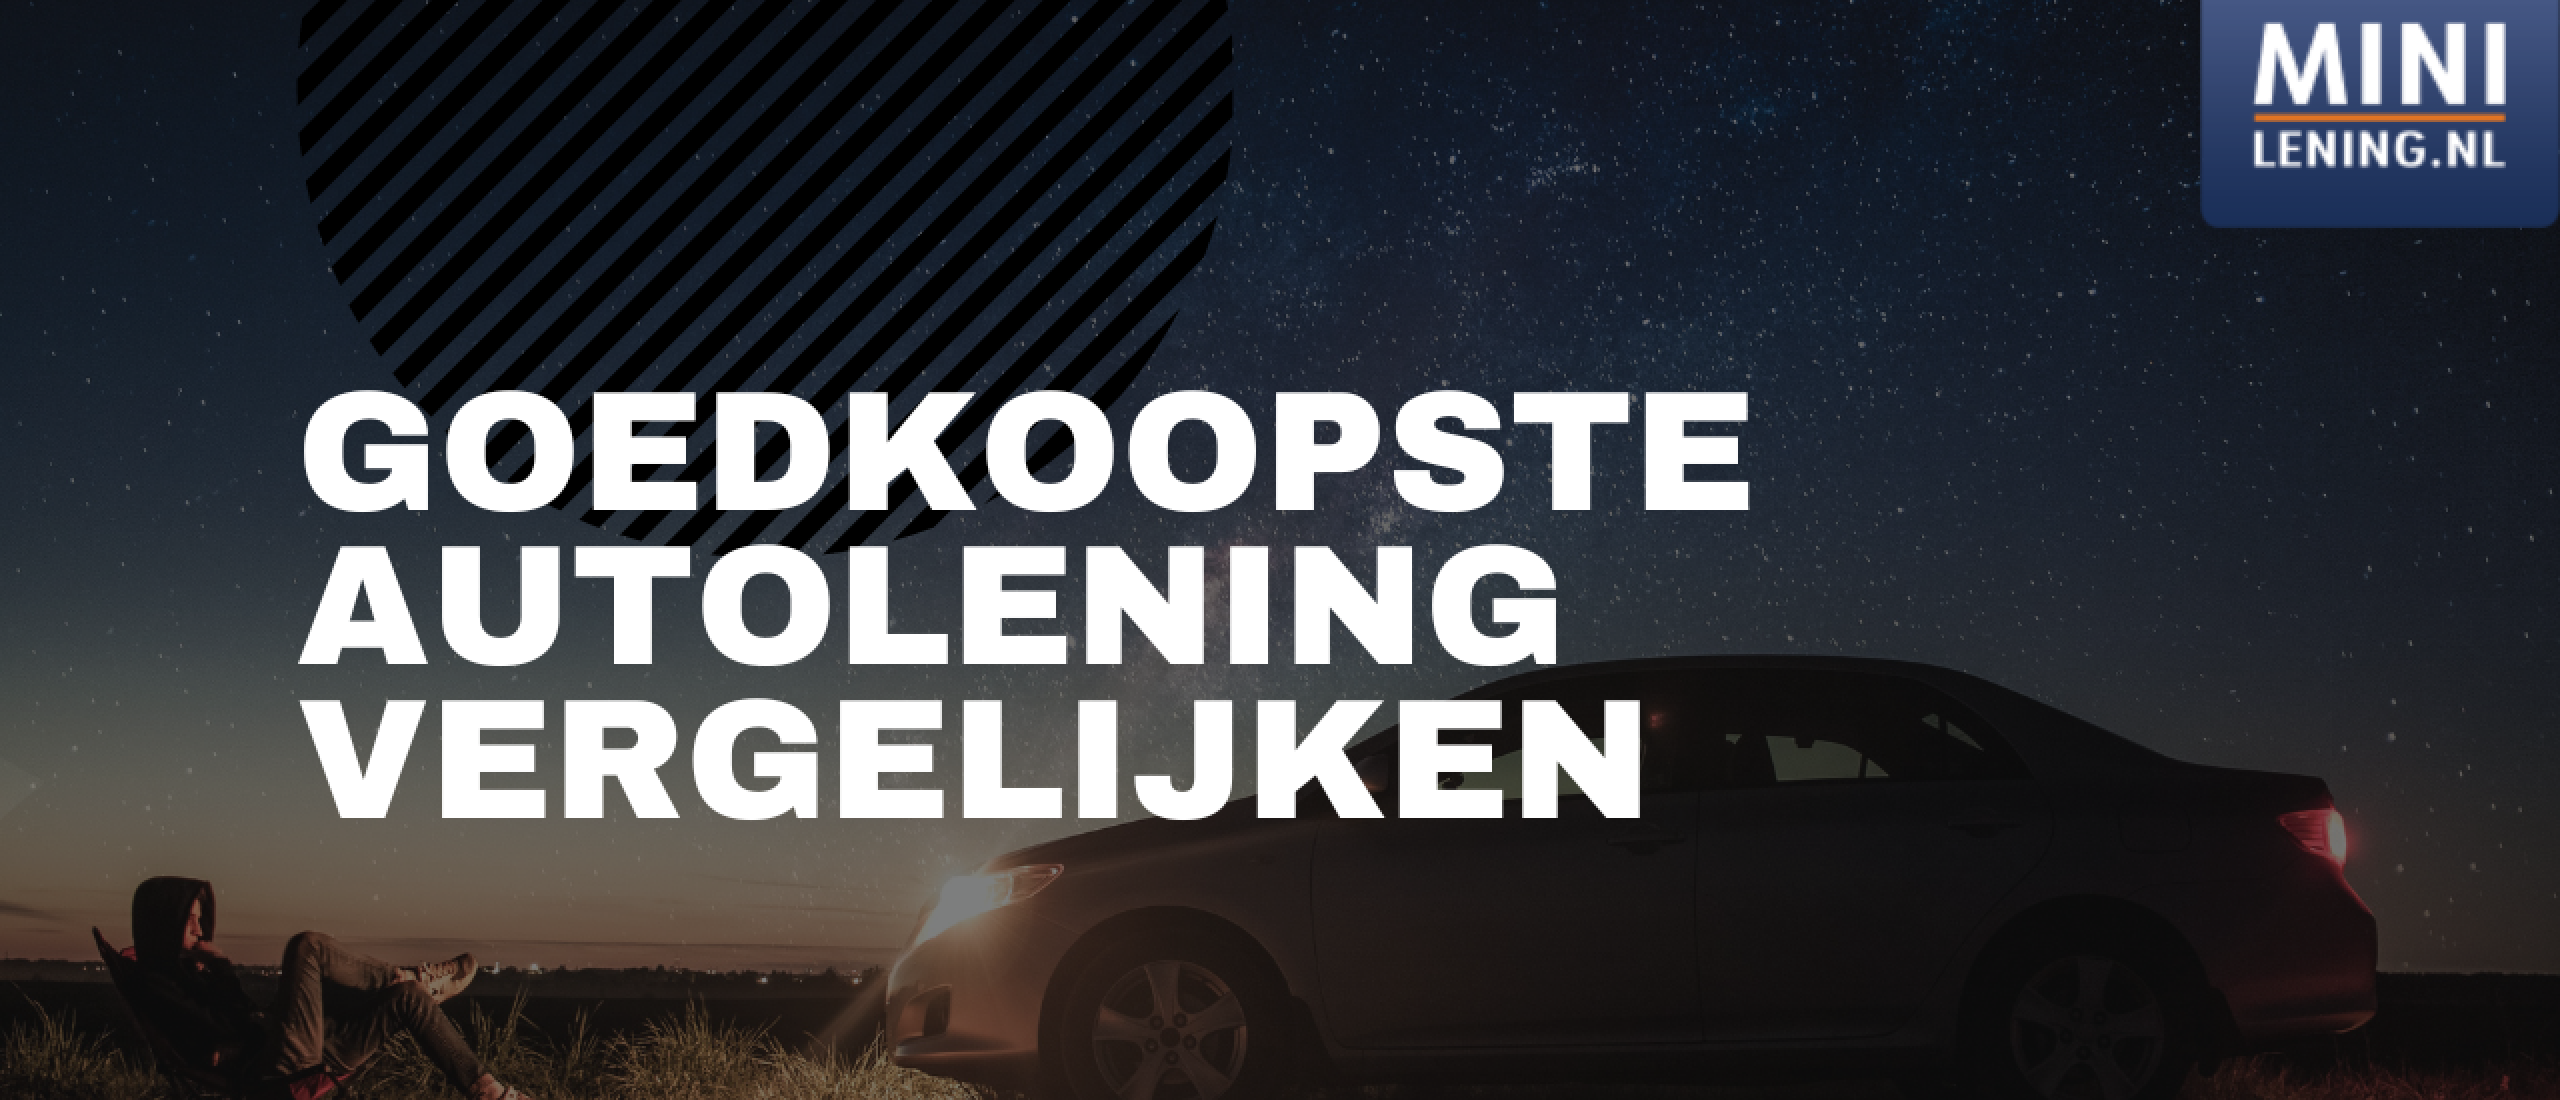 Goedkoopste Autolening Vergelijken Kleine Lening | Minilening.nl